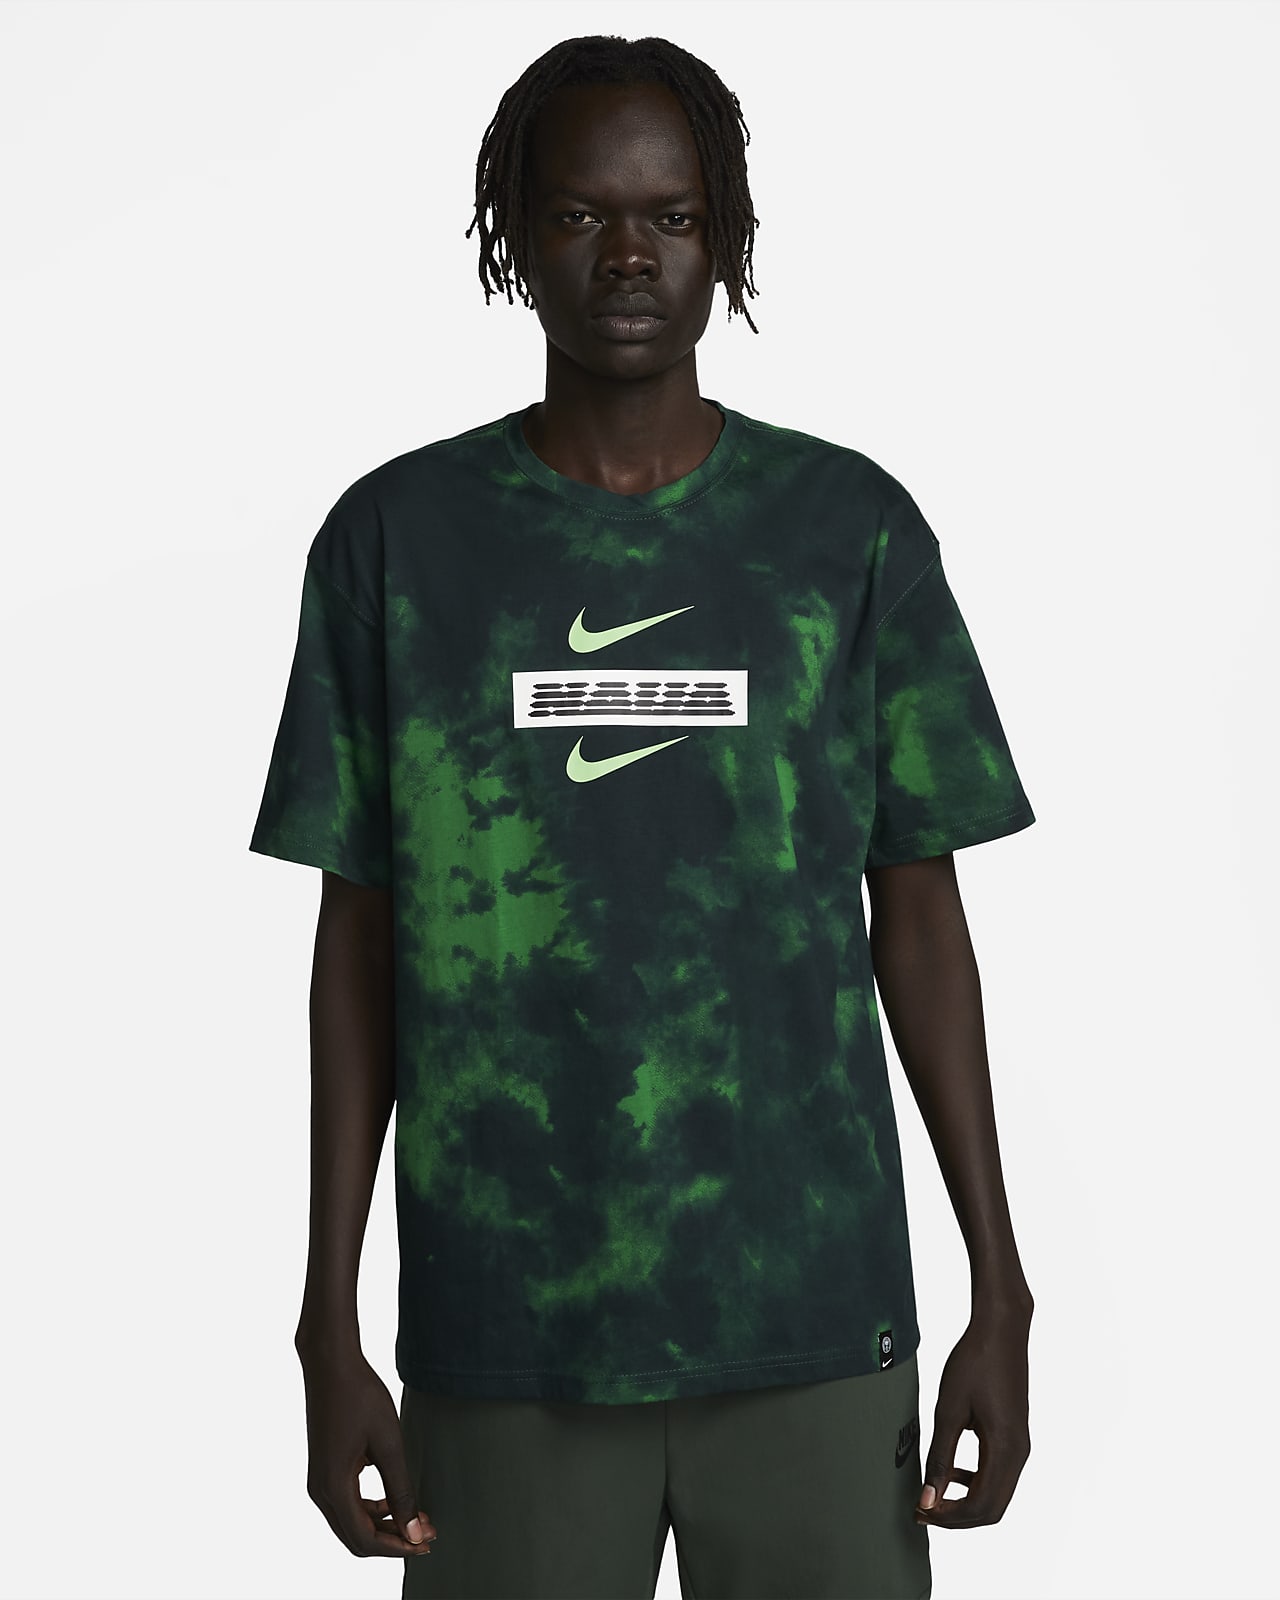 Coöperatie Bereid Bouwen Nigeria Men's Nike Ignite T-Shirt. Nike.com